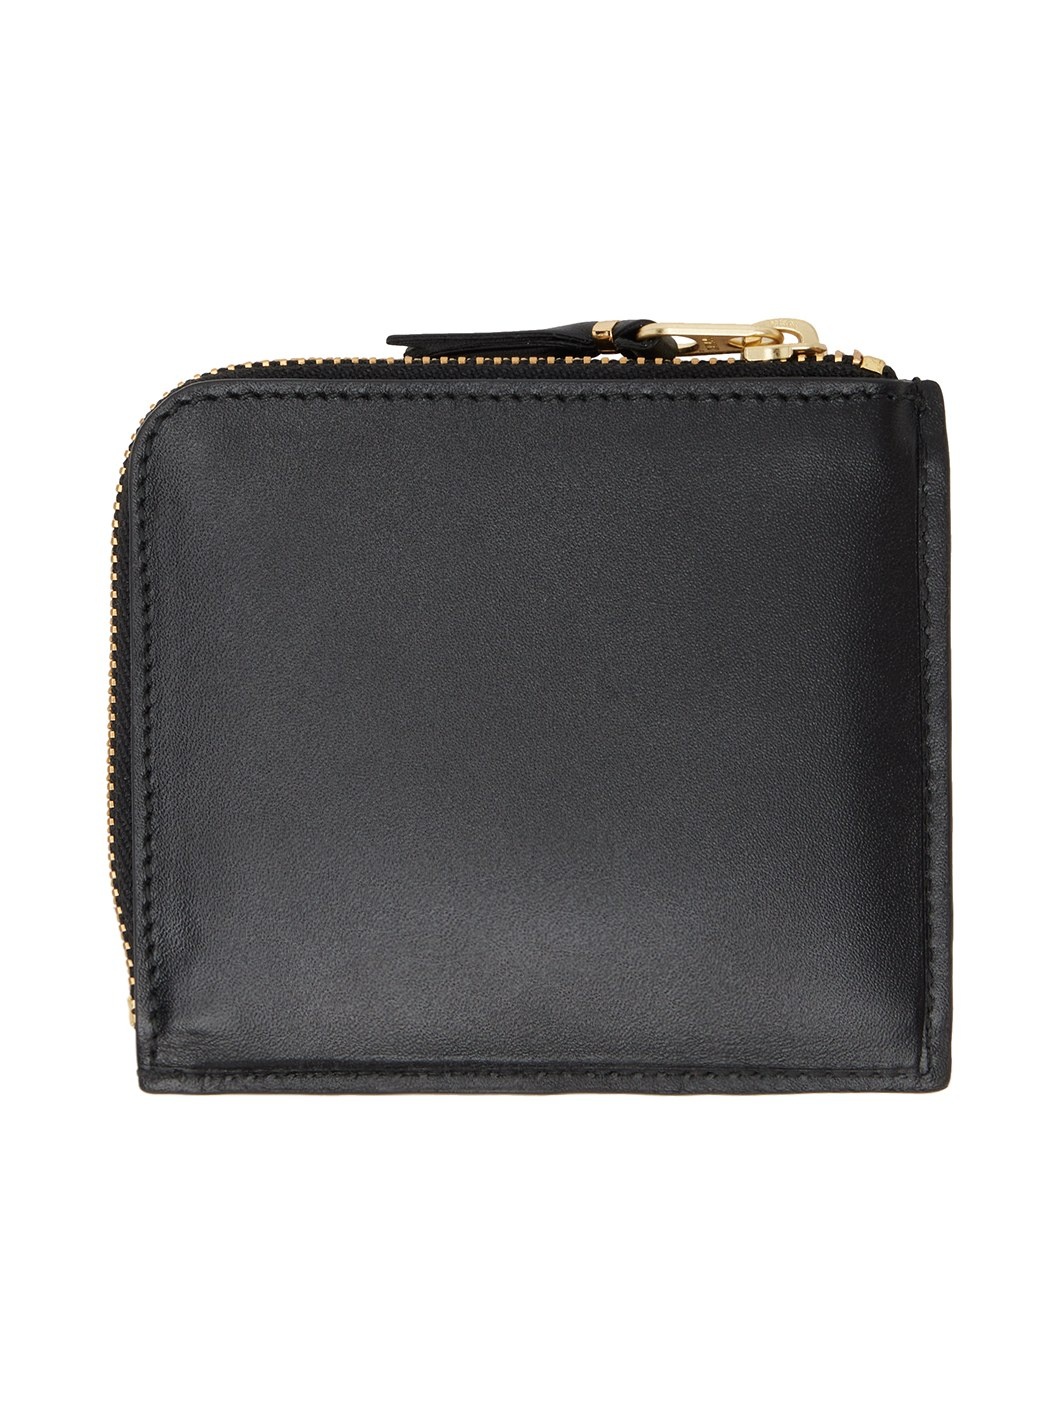 Black Outside Pocket Wallet - 2